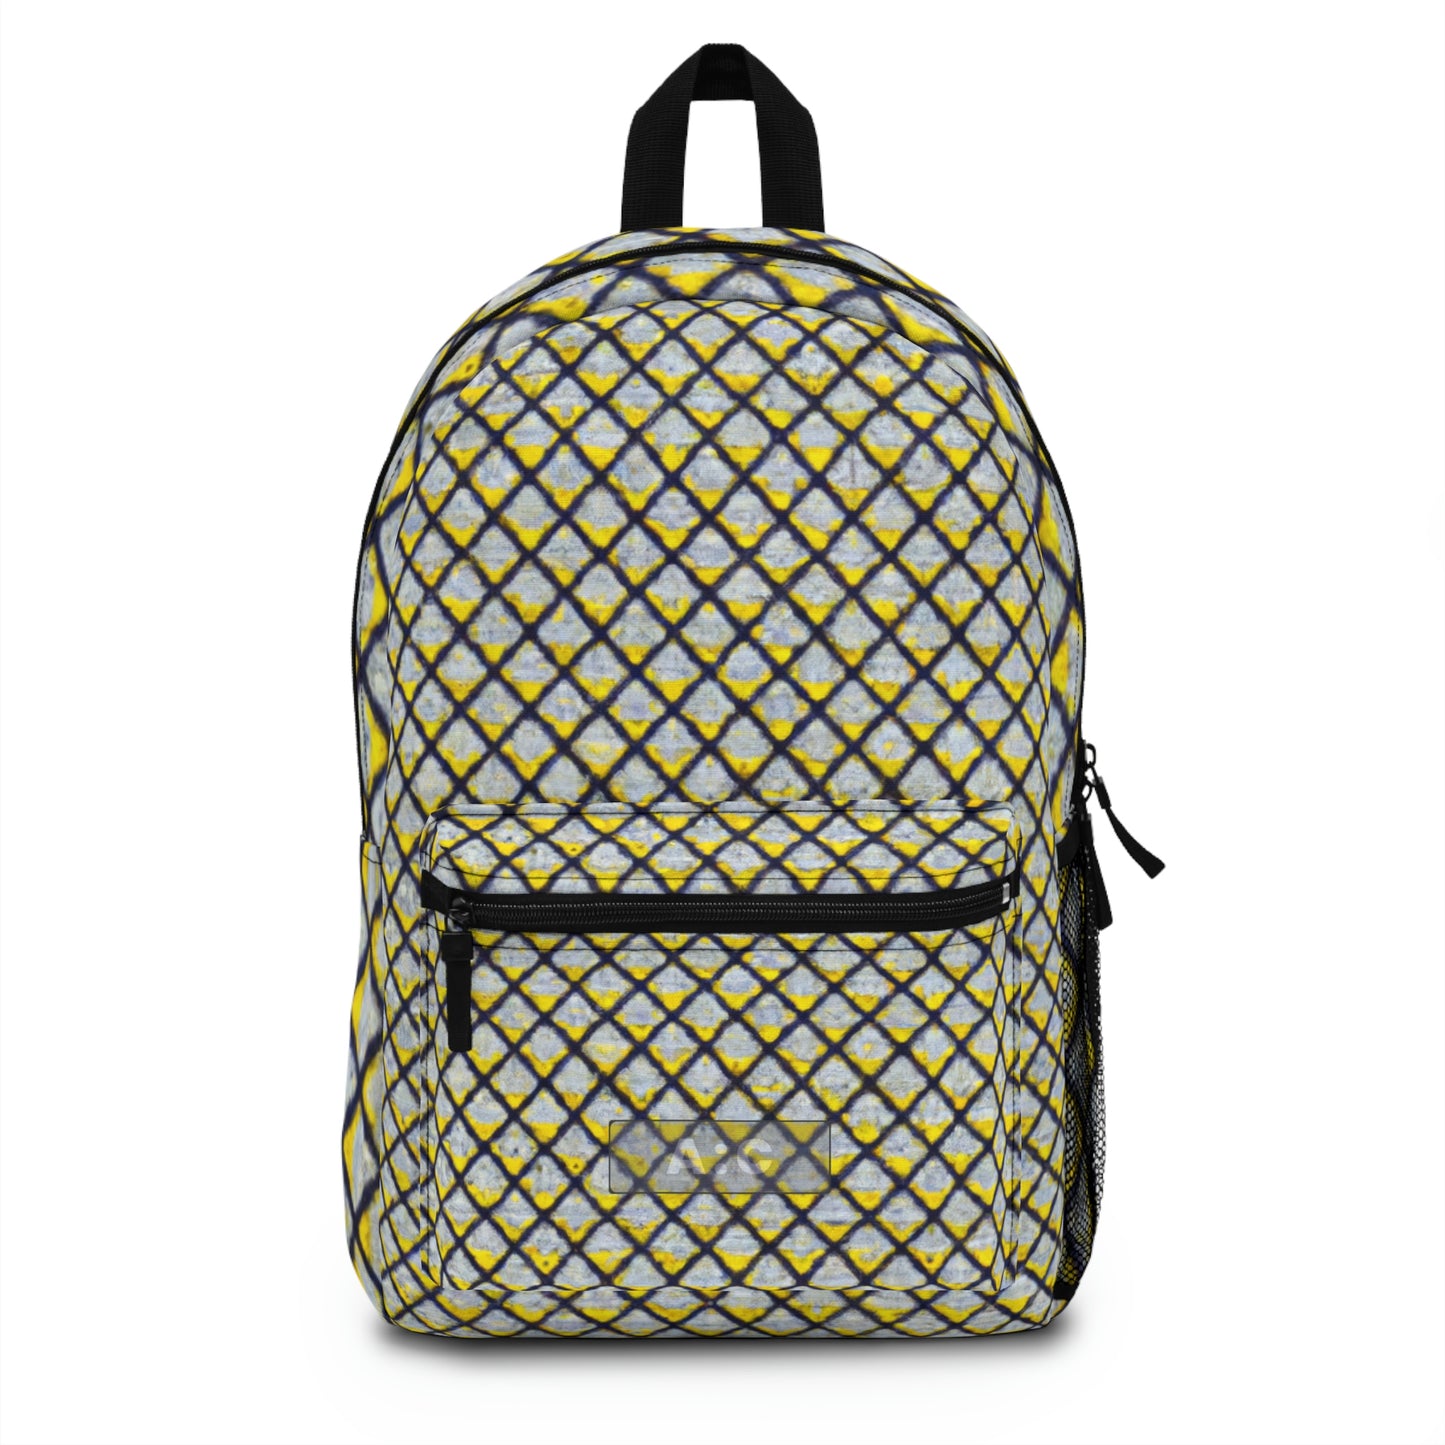 Hendrick Avercamp - Backpack